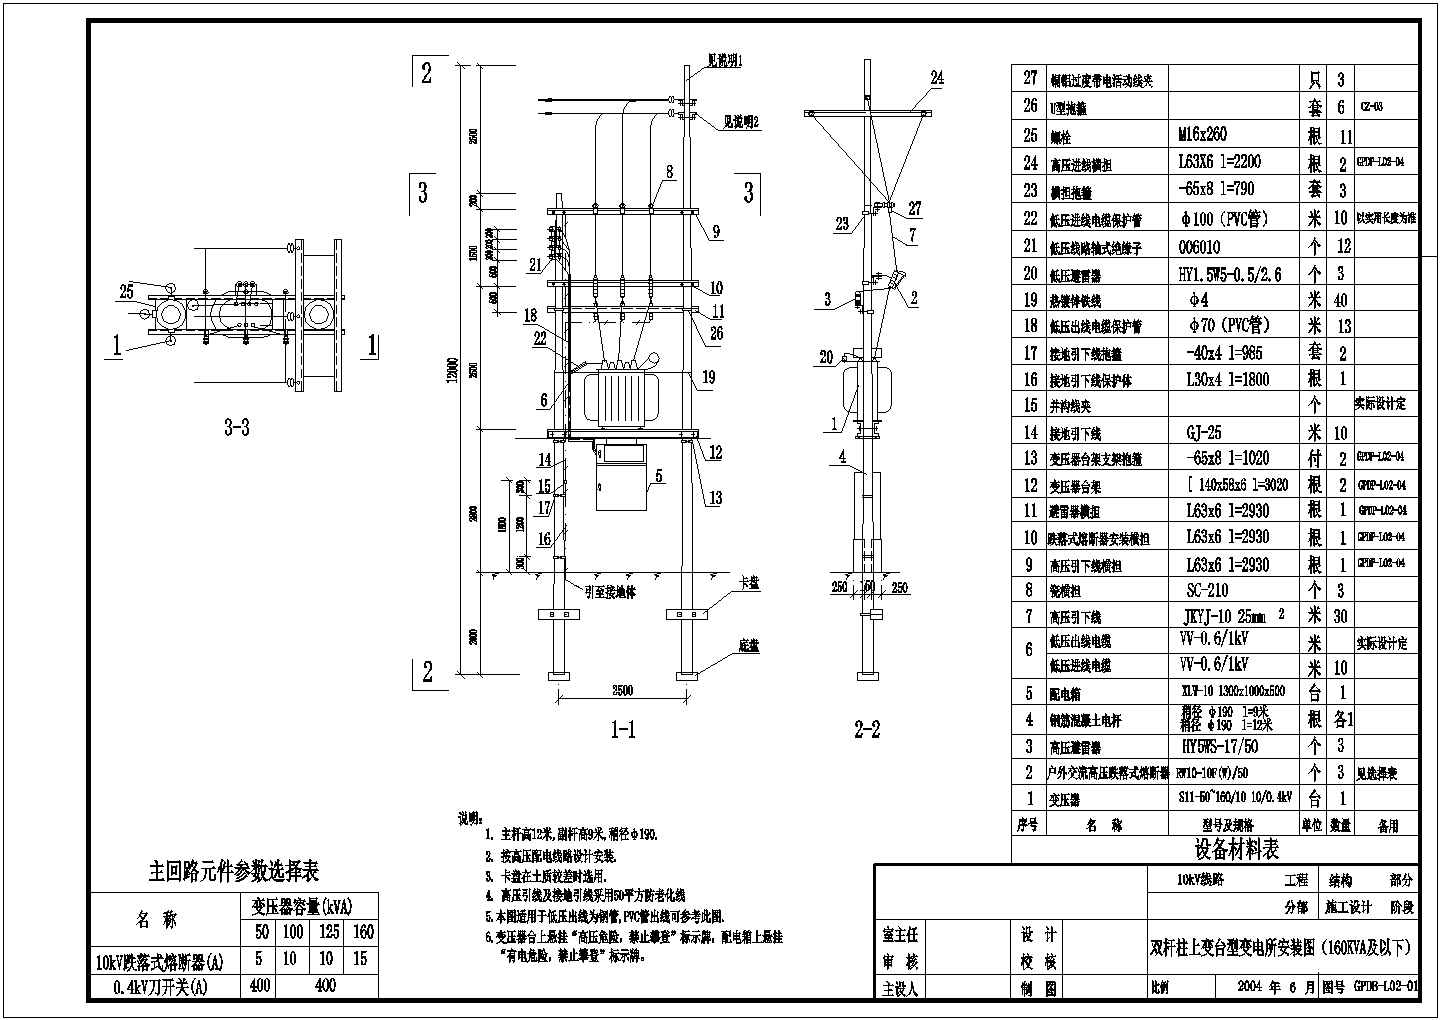 10kV典型供电系统方案图纸